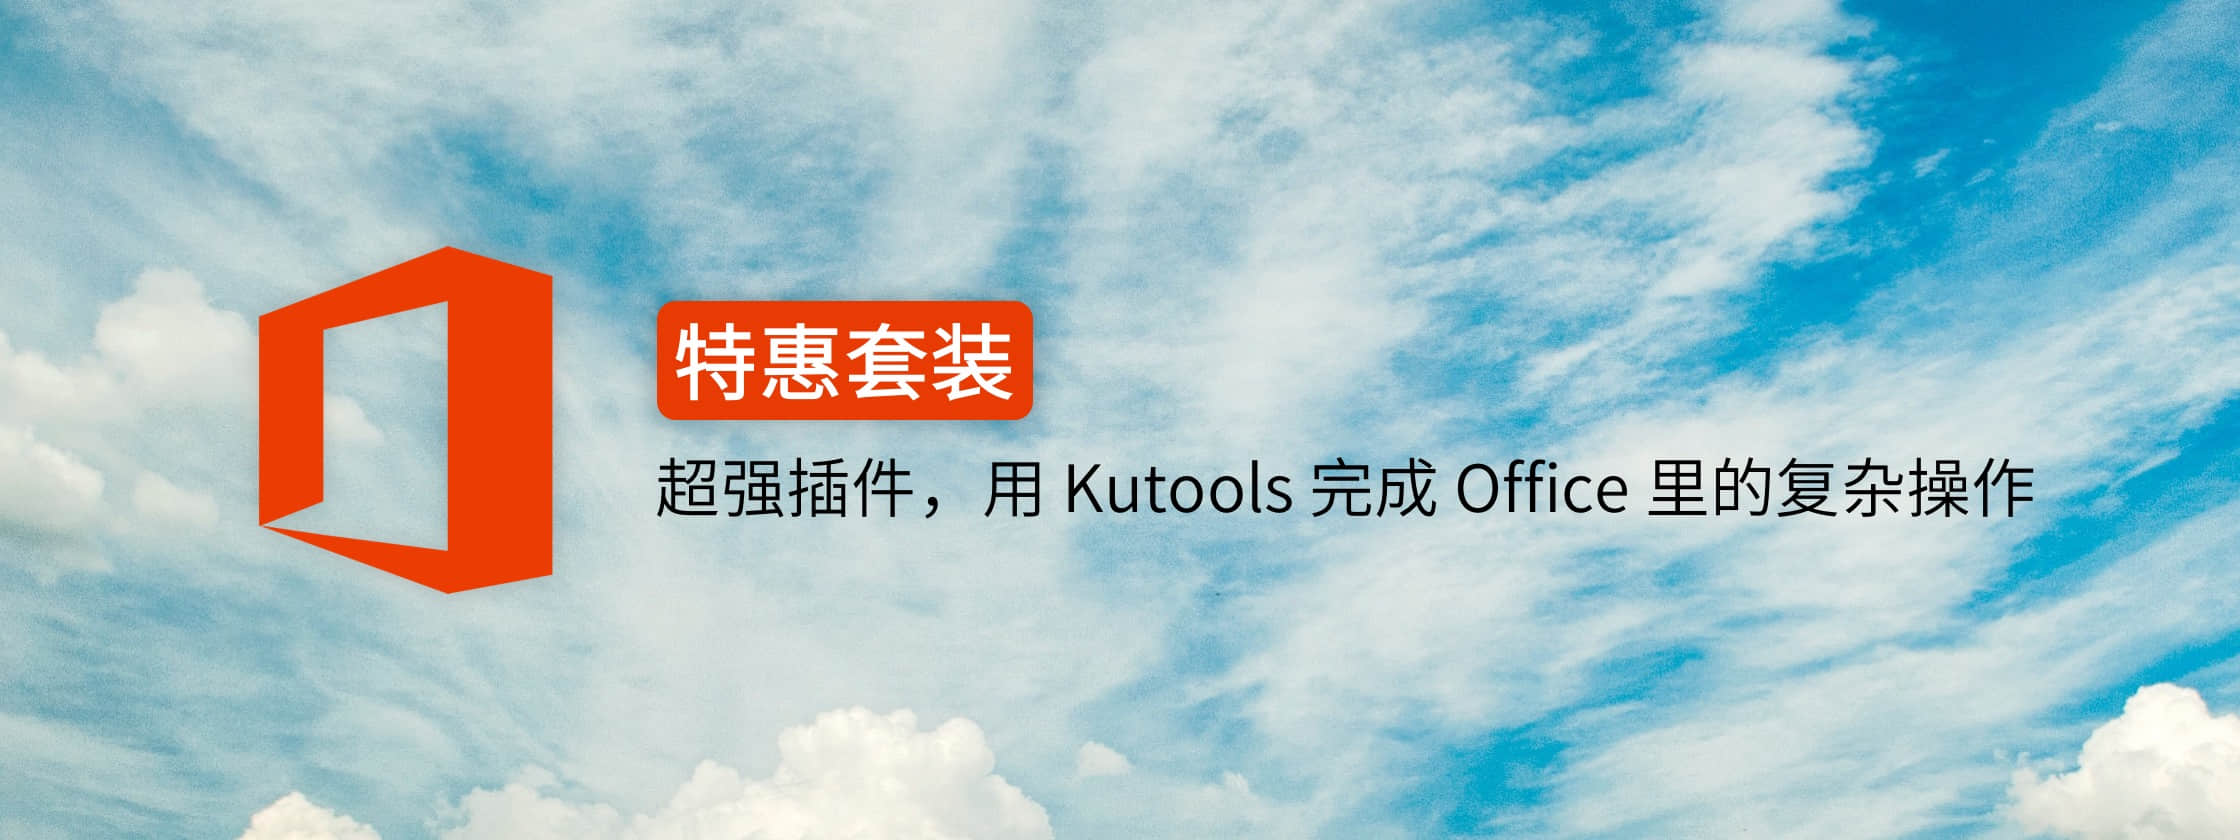 超值套装丨Word、Excel 和 Outlook 里的复杂操作，用 Kutools 就能一键完成